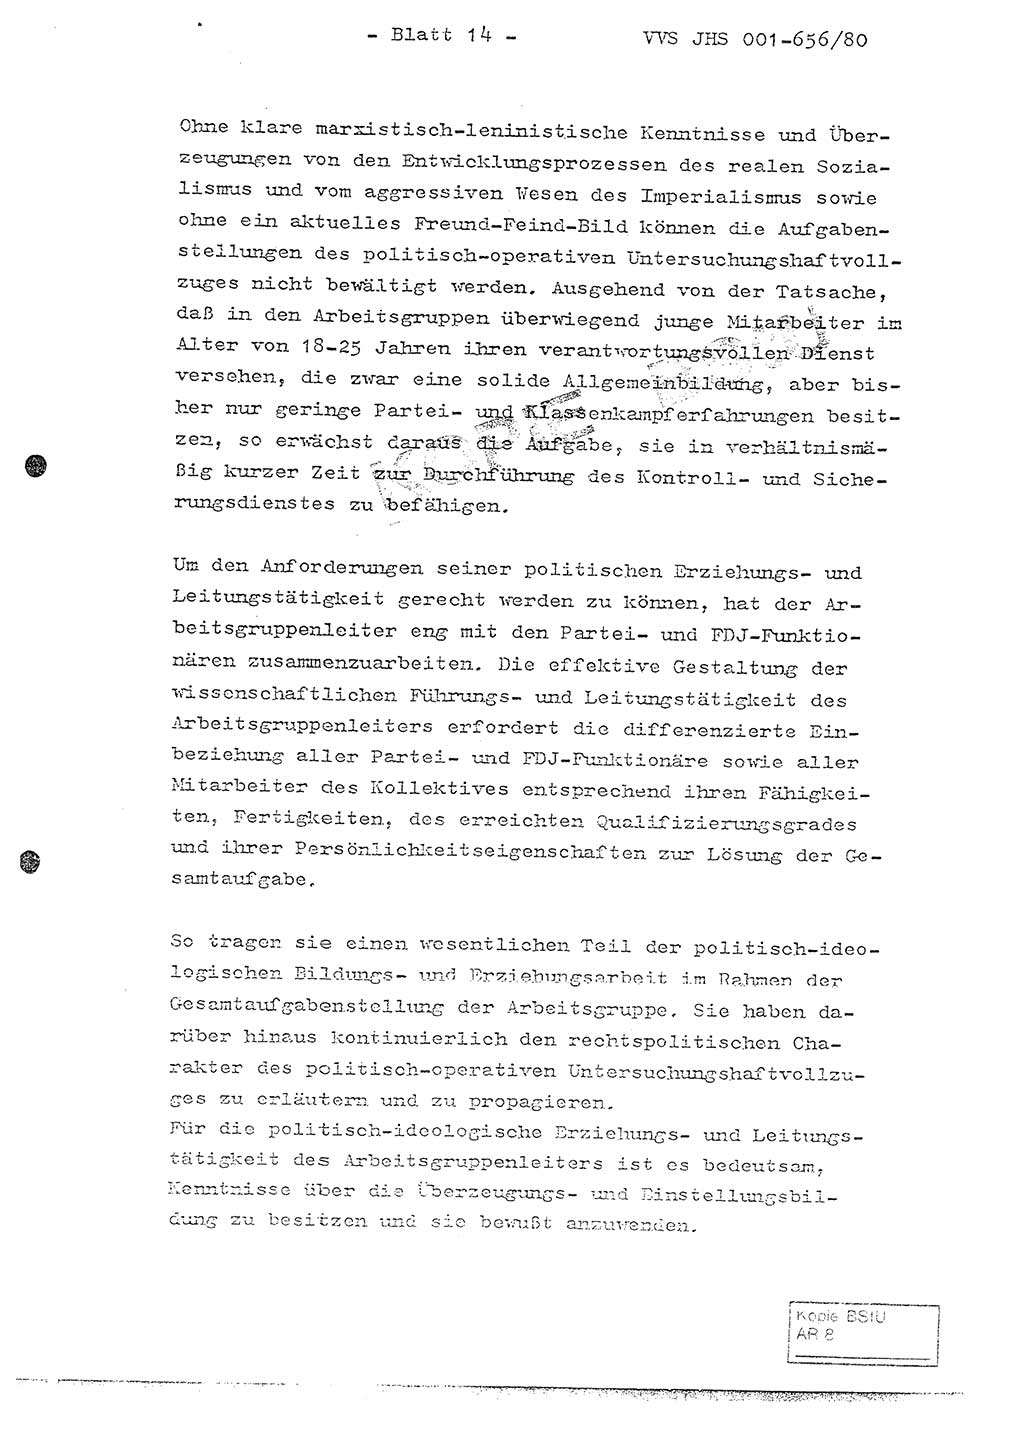 Fachschulabschlußarbeit Unterleutnant Christian Kätzel (Abt. ⅩⅣ), Ministerium für Staatssicherheit (MfS) [Deutsche Demokratische Republik (DDR)], Juristische Hochschule (JHS), Vertrauliche Verschlußsache (VVS) 001-656/80, Potsdam 1980, Blatt 14 (FS-Abschl.-Arb. MfS DDR JHS VVS 001-656/80 1980, Bl. 14)